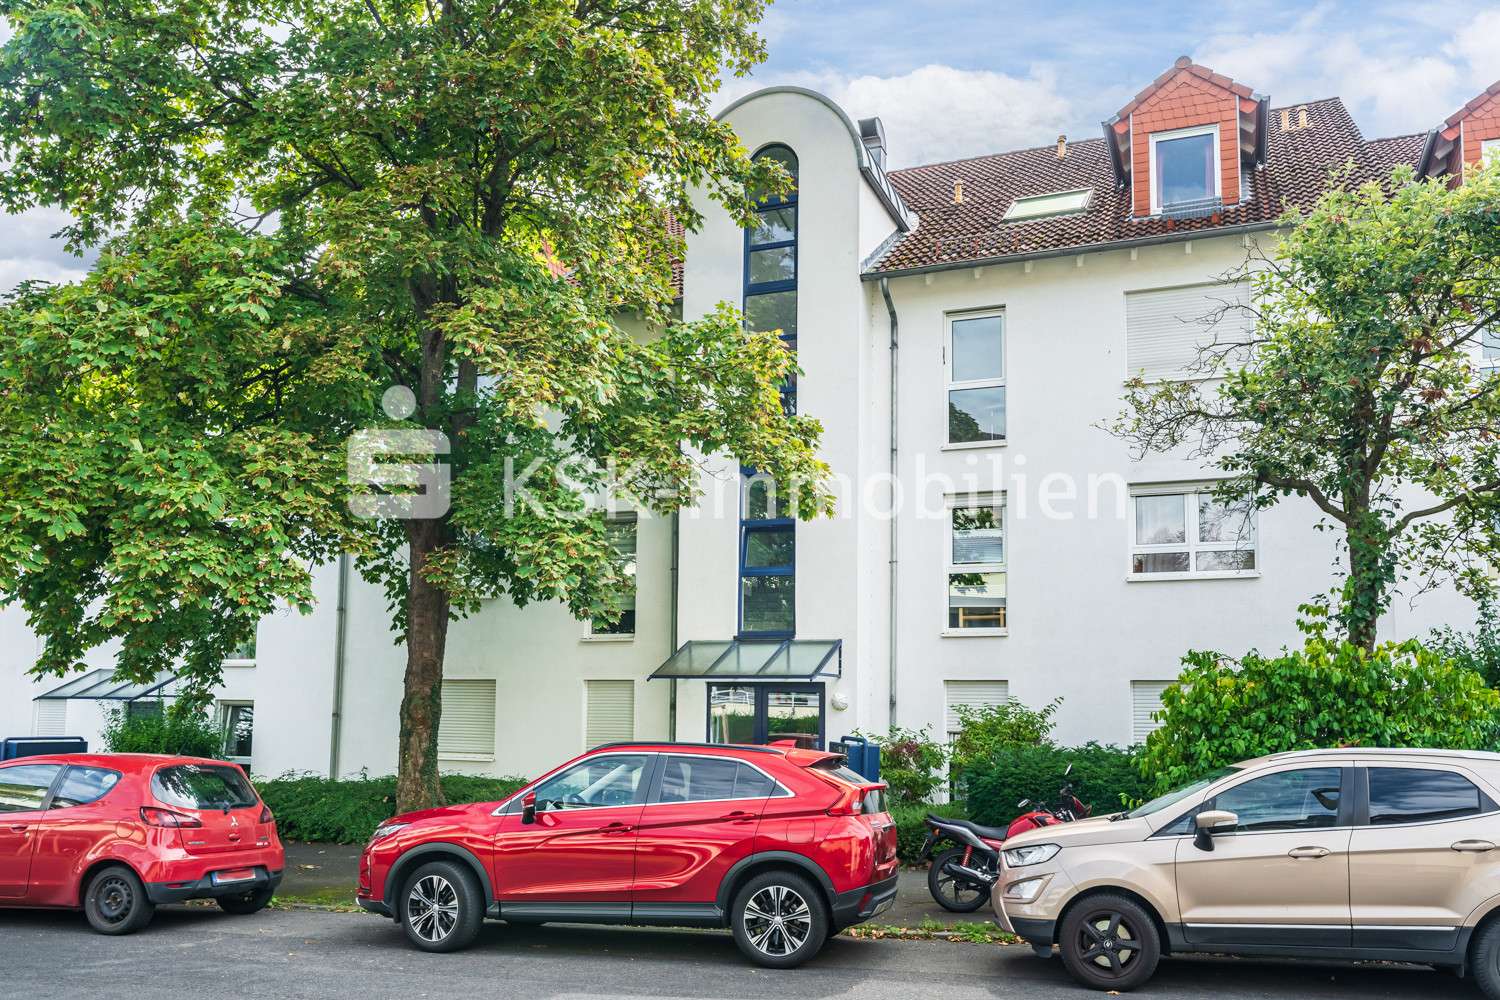 120306 Außenansicht  - Maisonette-Wohnung in 53175 Bonn / Friesdorf mit 55m² kaufen